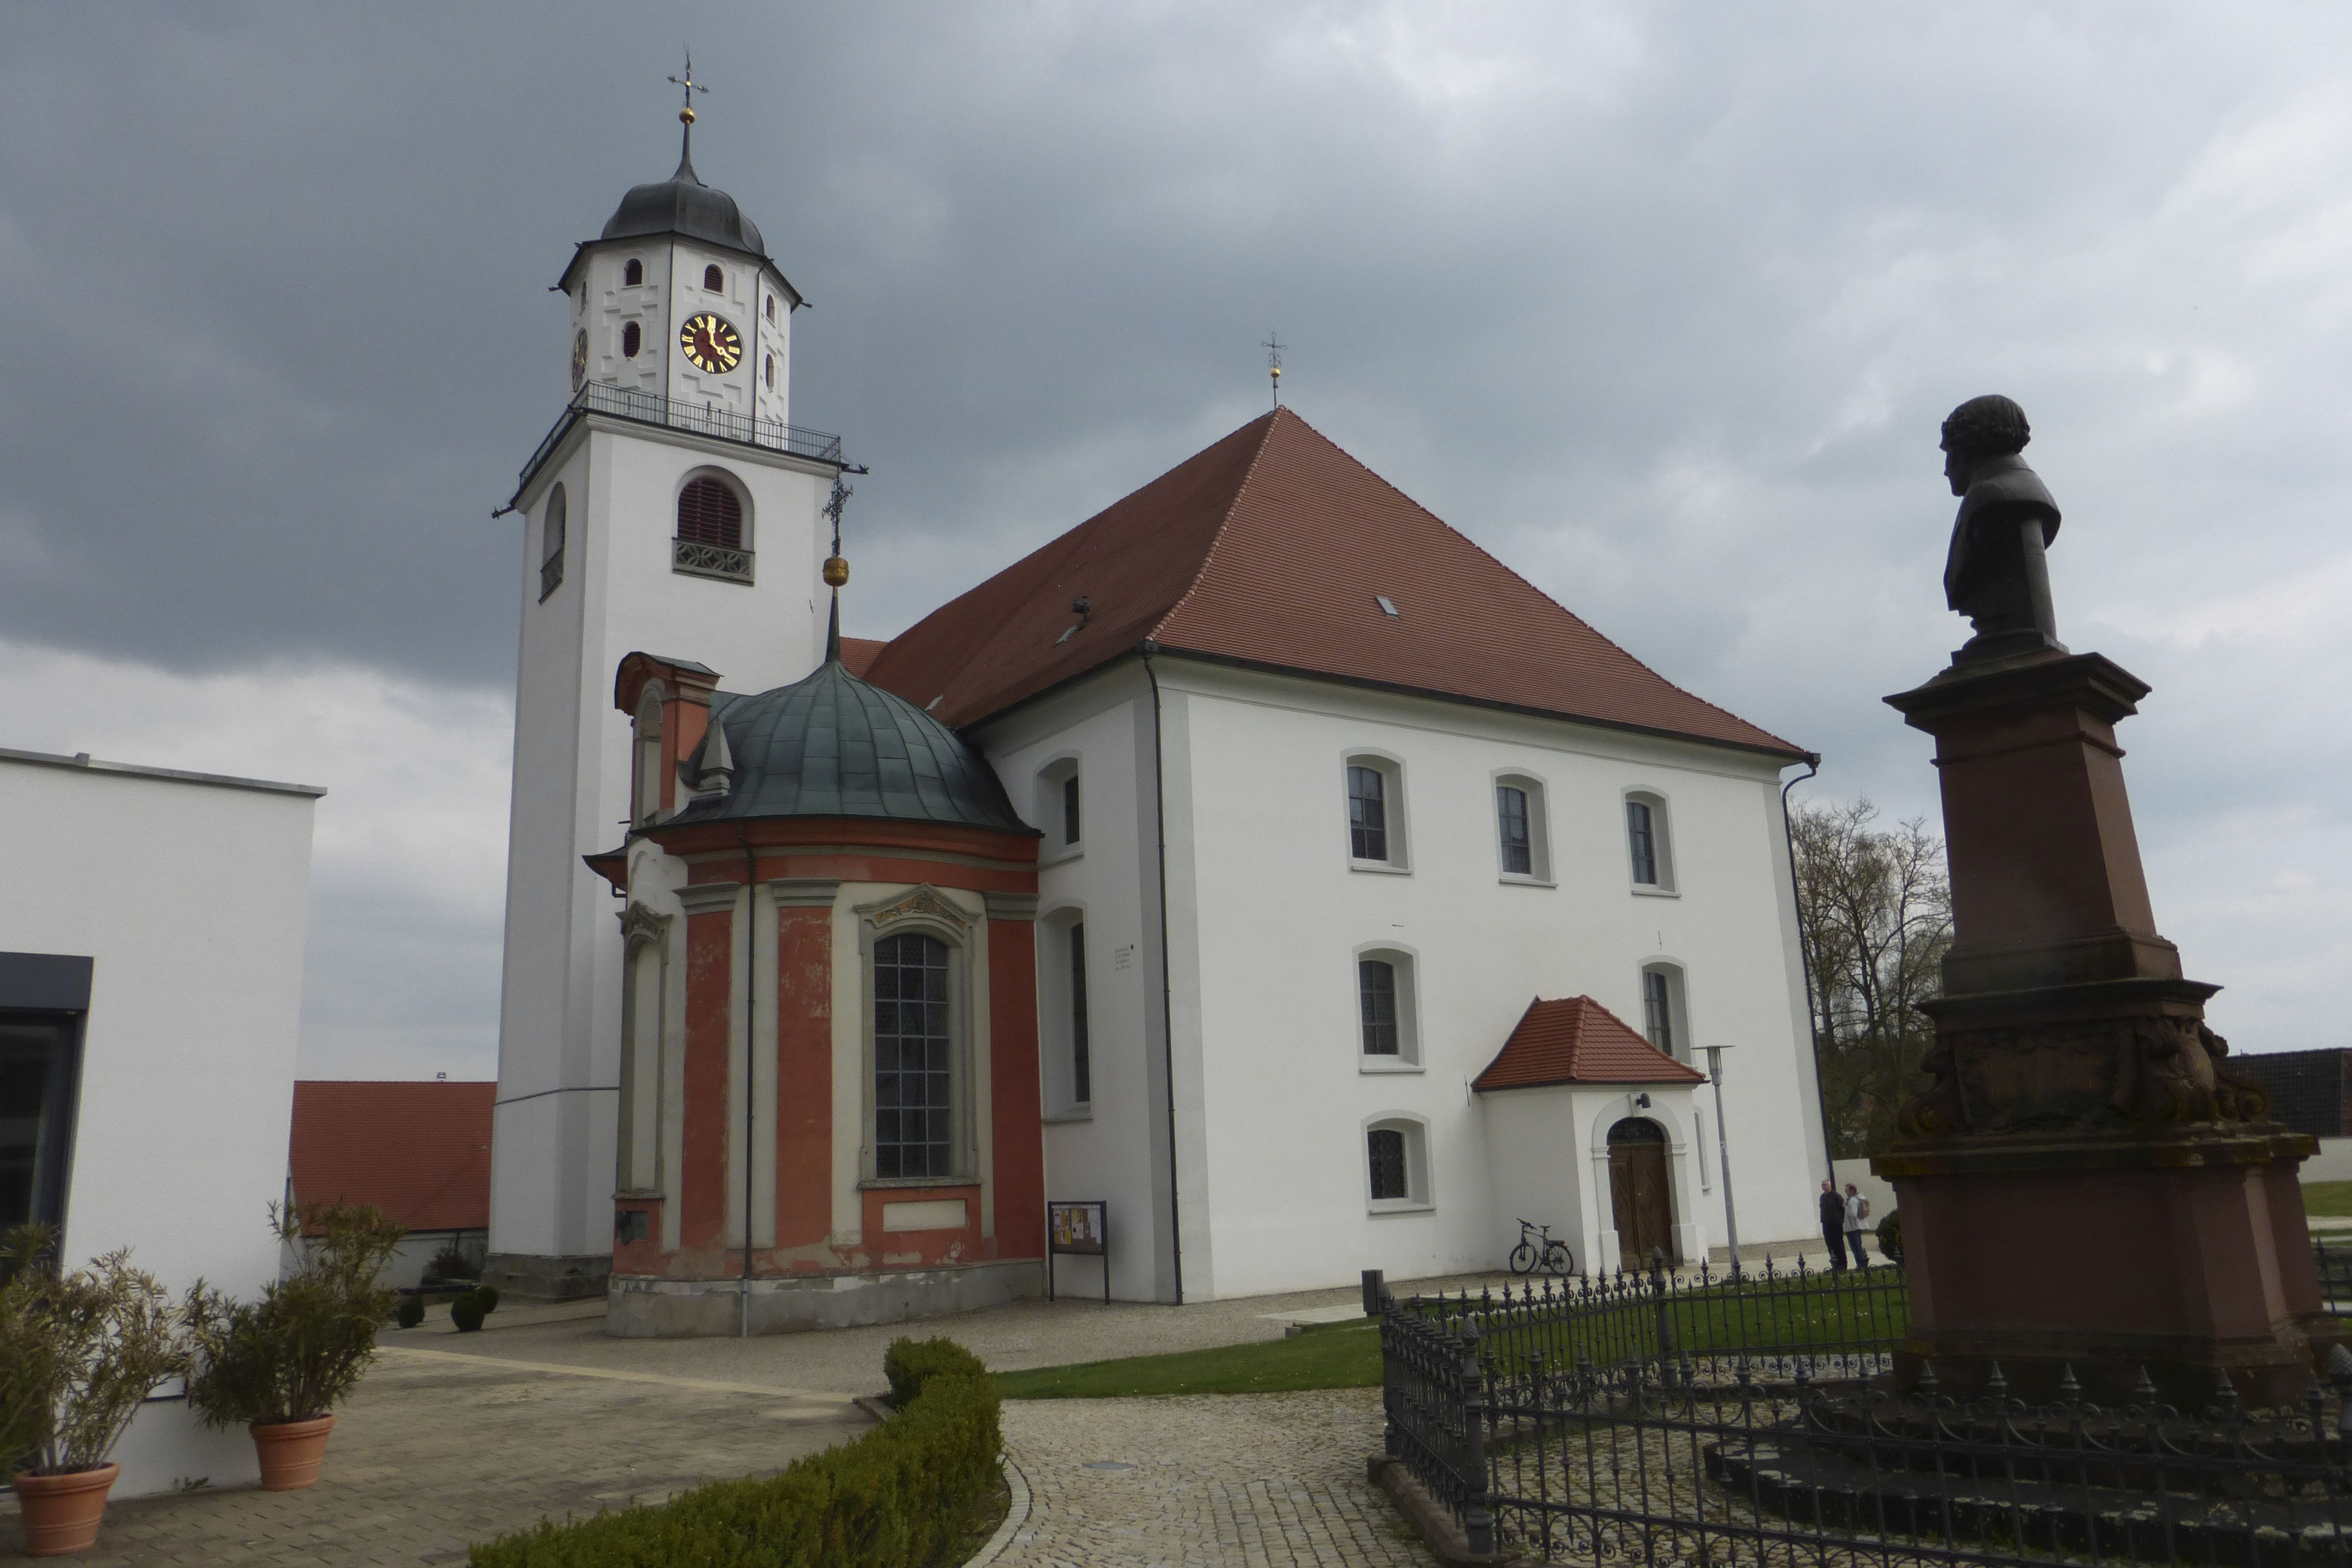  St. Martin in Meßkirch bekommt Besuch von der DSD